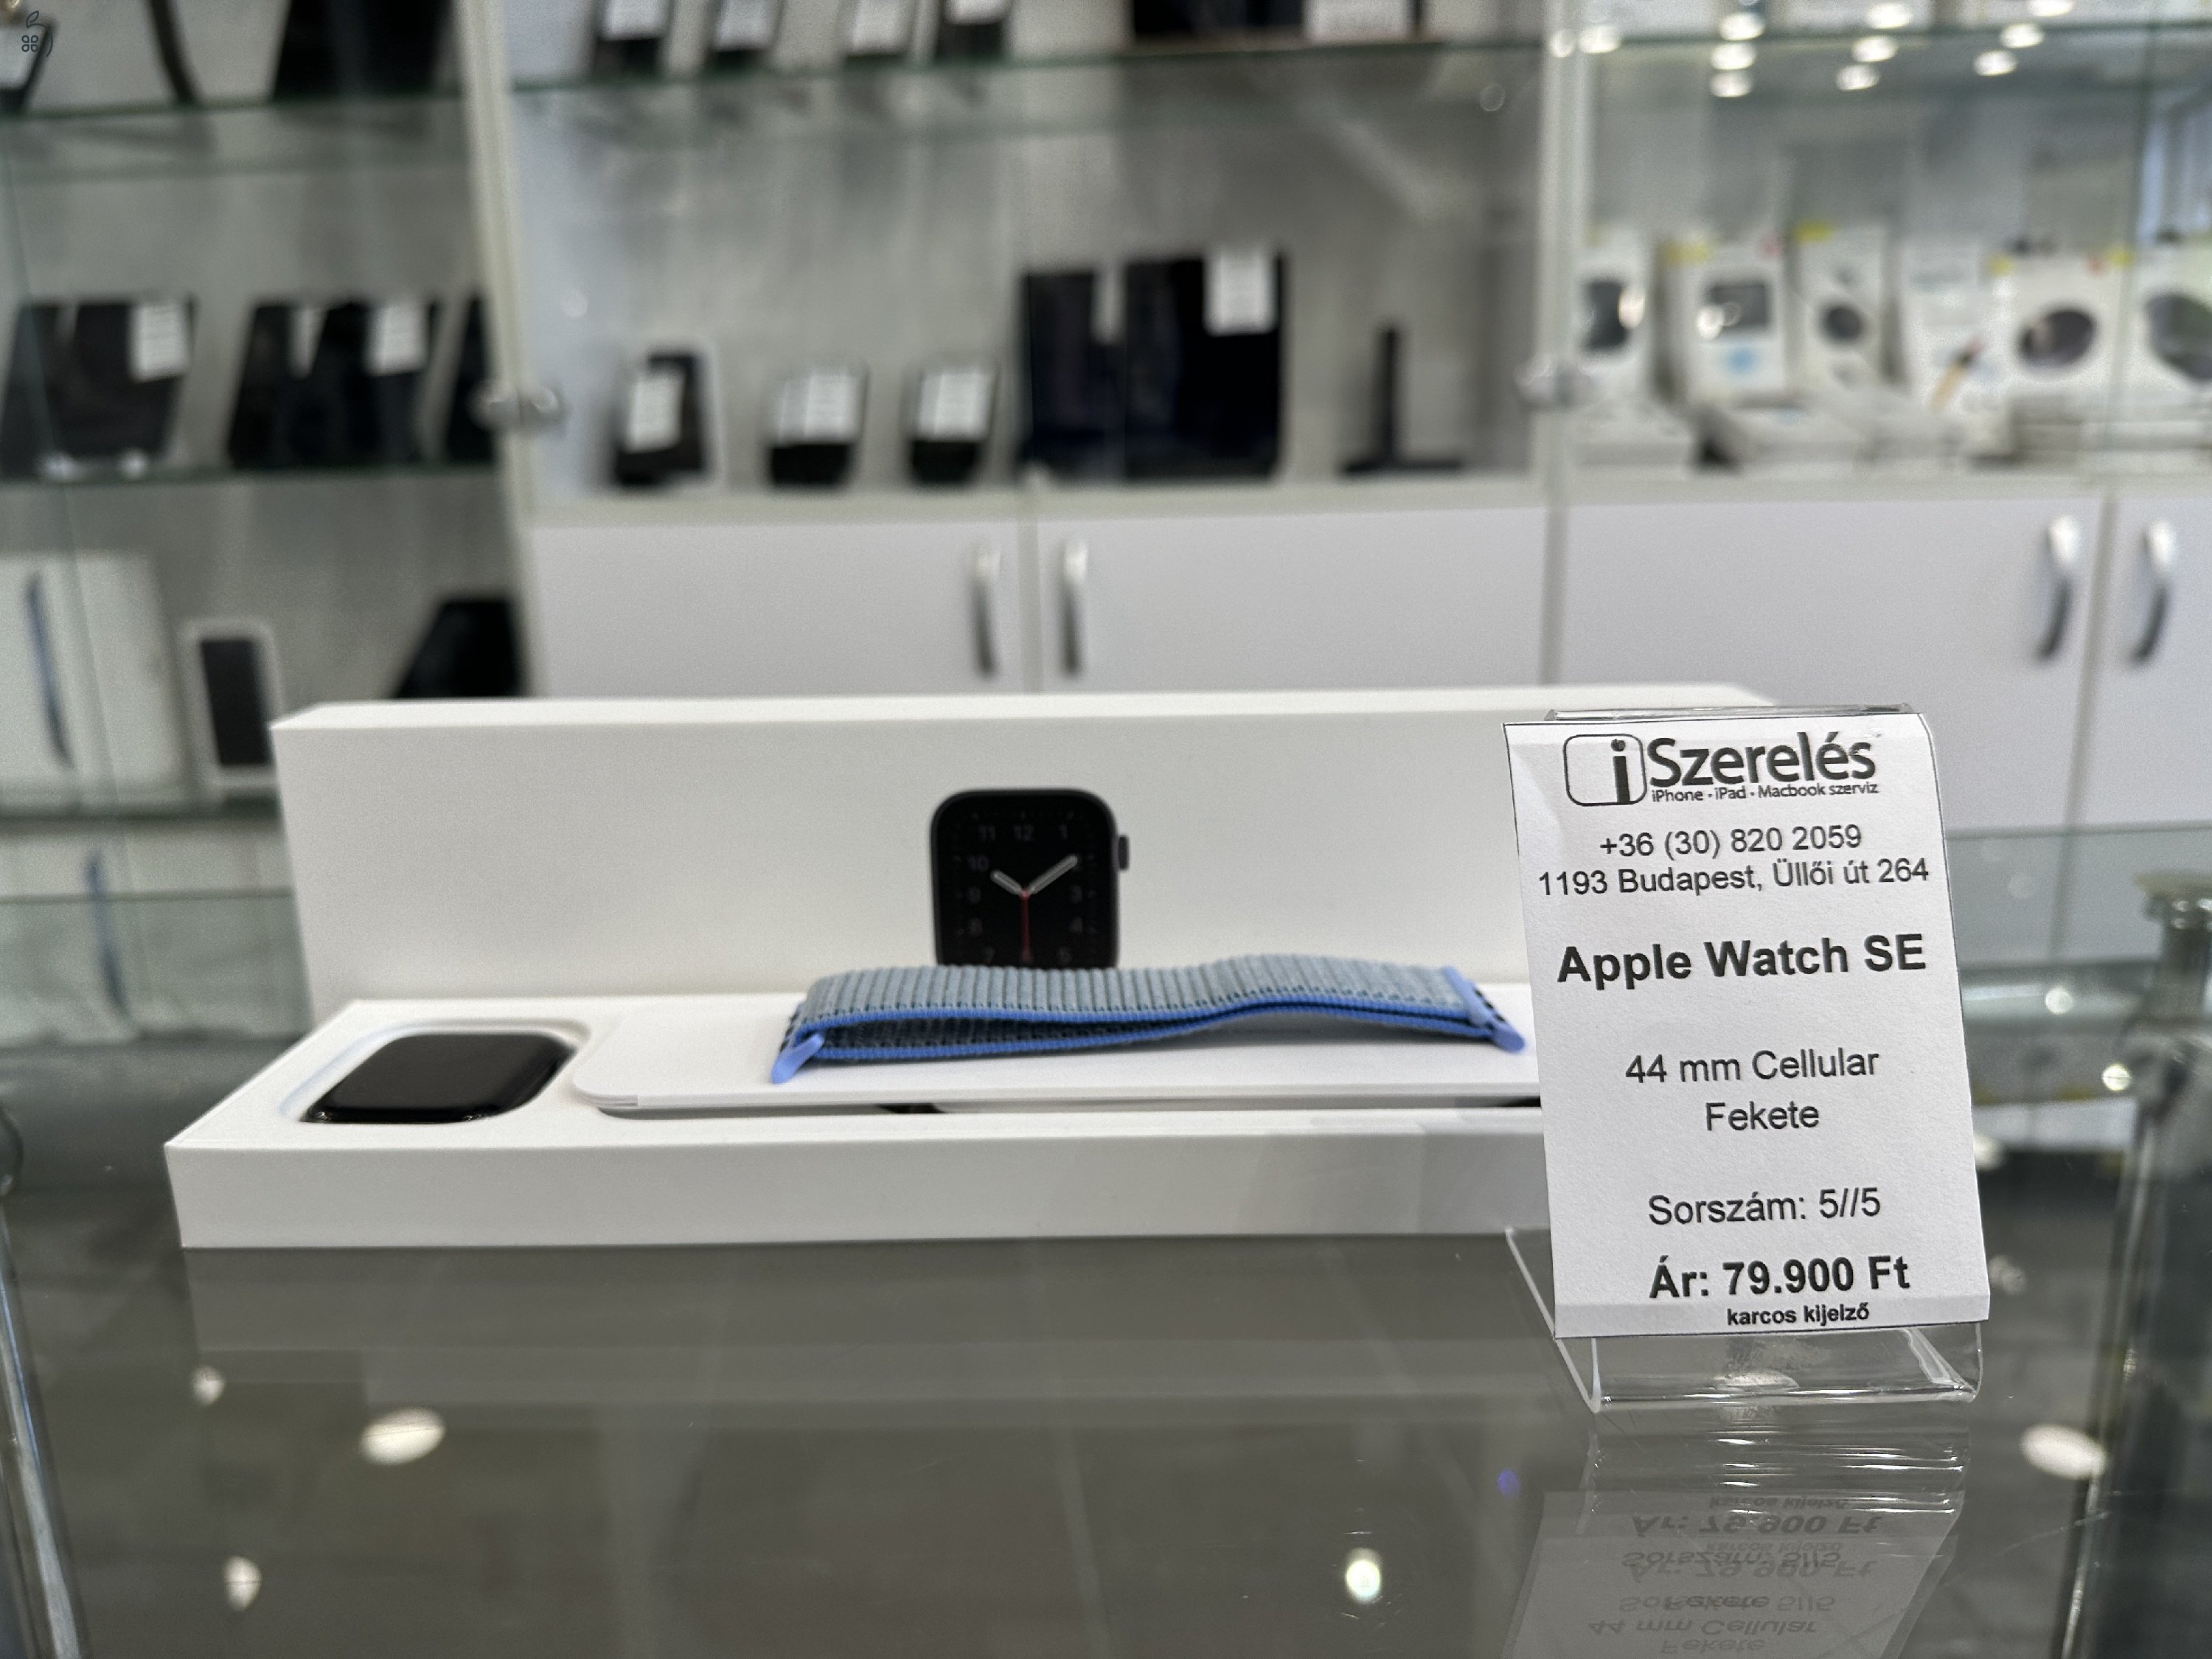 Apple Watch SE Cellular-os kivitel 44 mm fekete garanciával (5/5) iSzerelés.hu